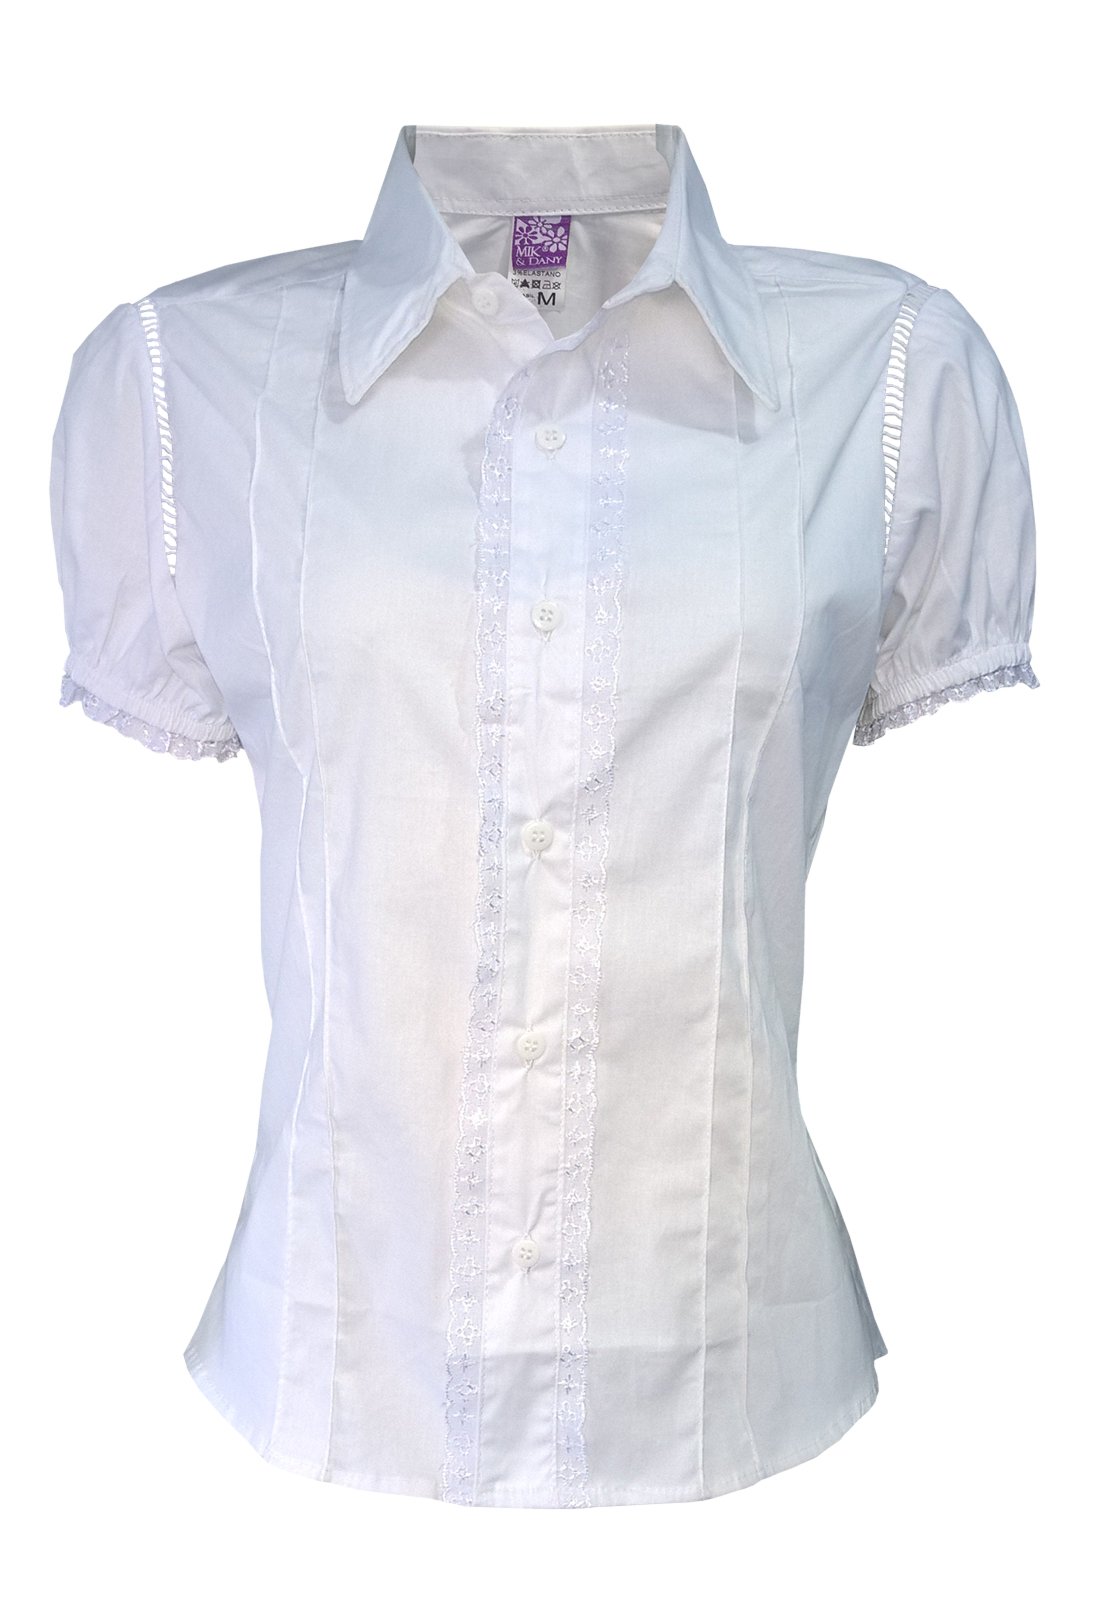 blusa social branca feminina manga curta